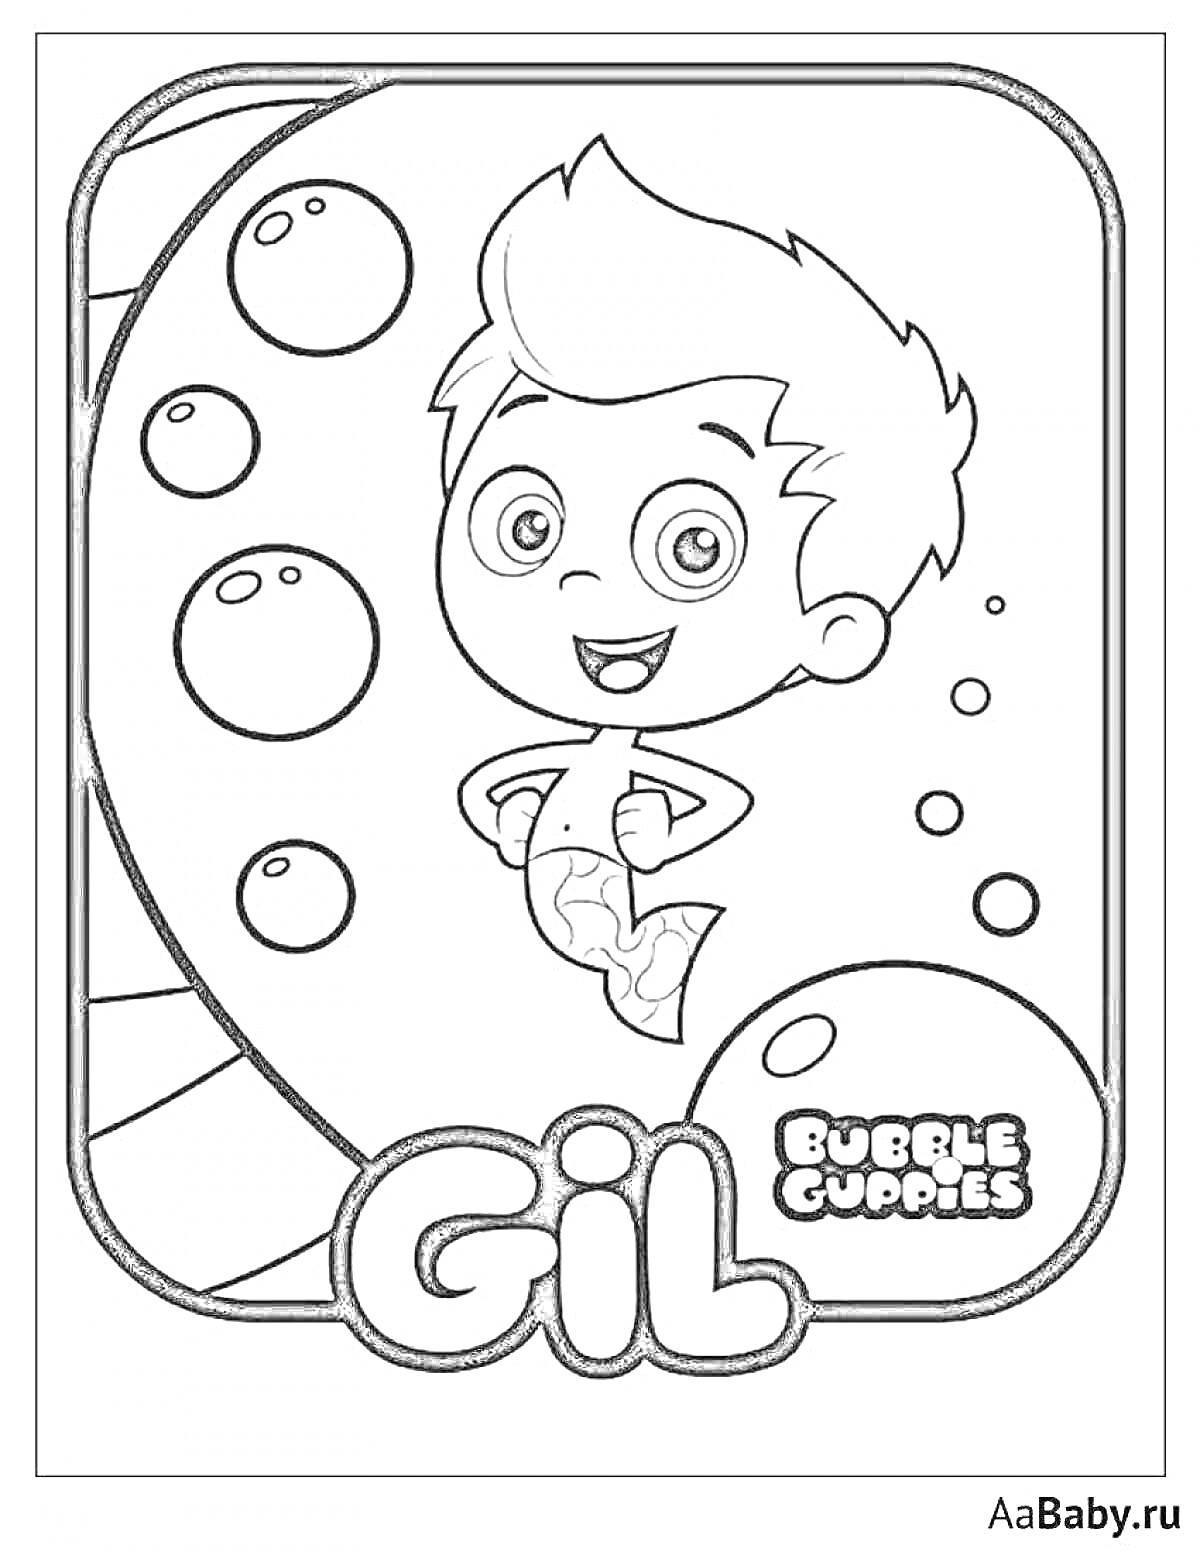 Раскраска Мальчик Гил из Bubble Guppies с пузырями